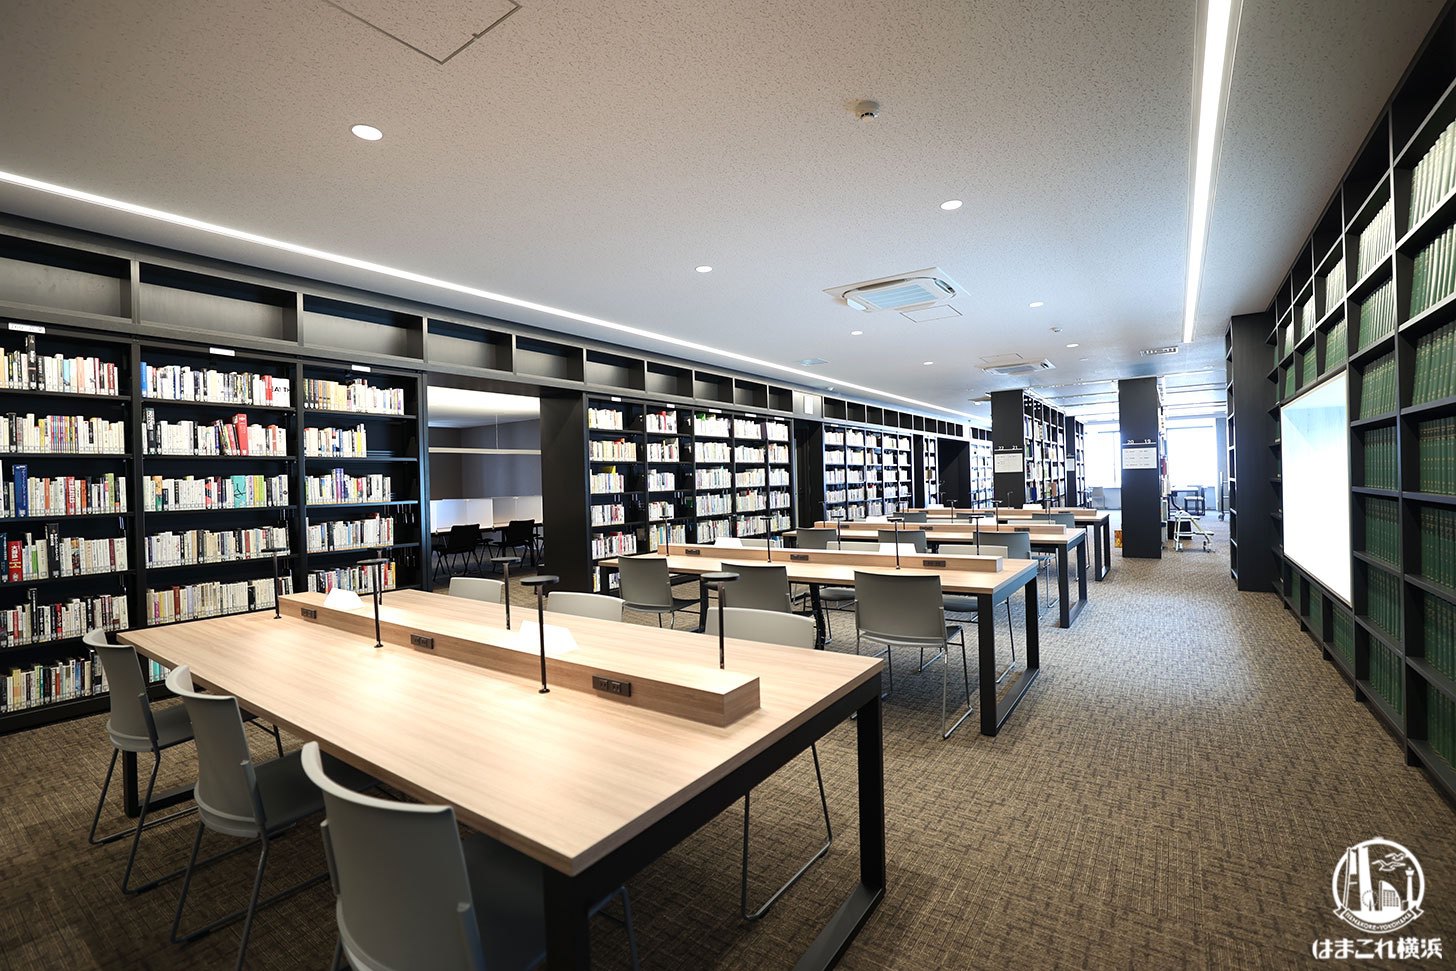 神奈川大学図書館 4階